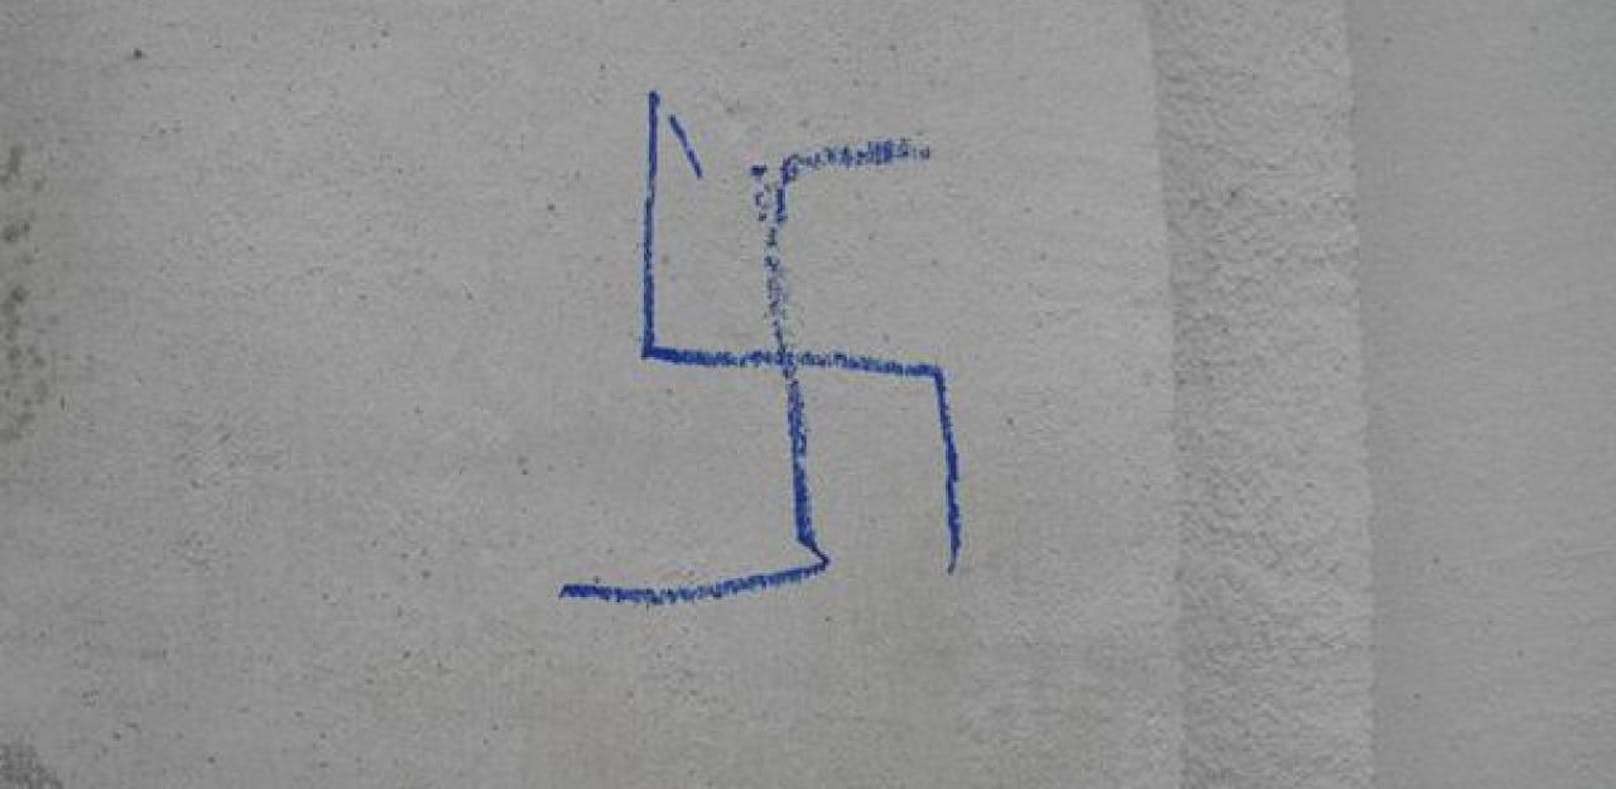 Die Burschen beschmierten die Fassade mit Hakenkreuzen und Neonazi-Slogans. (Symbolbild)